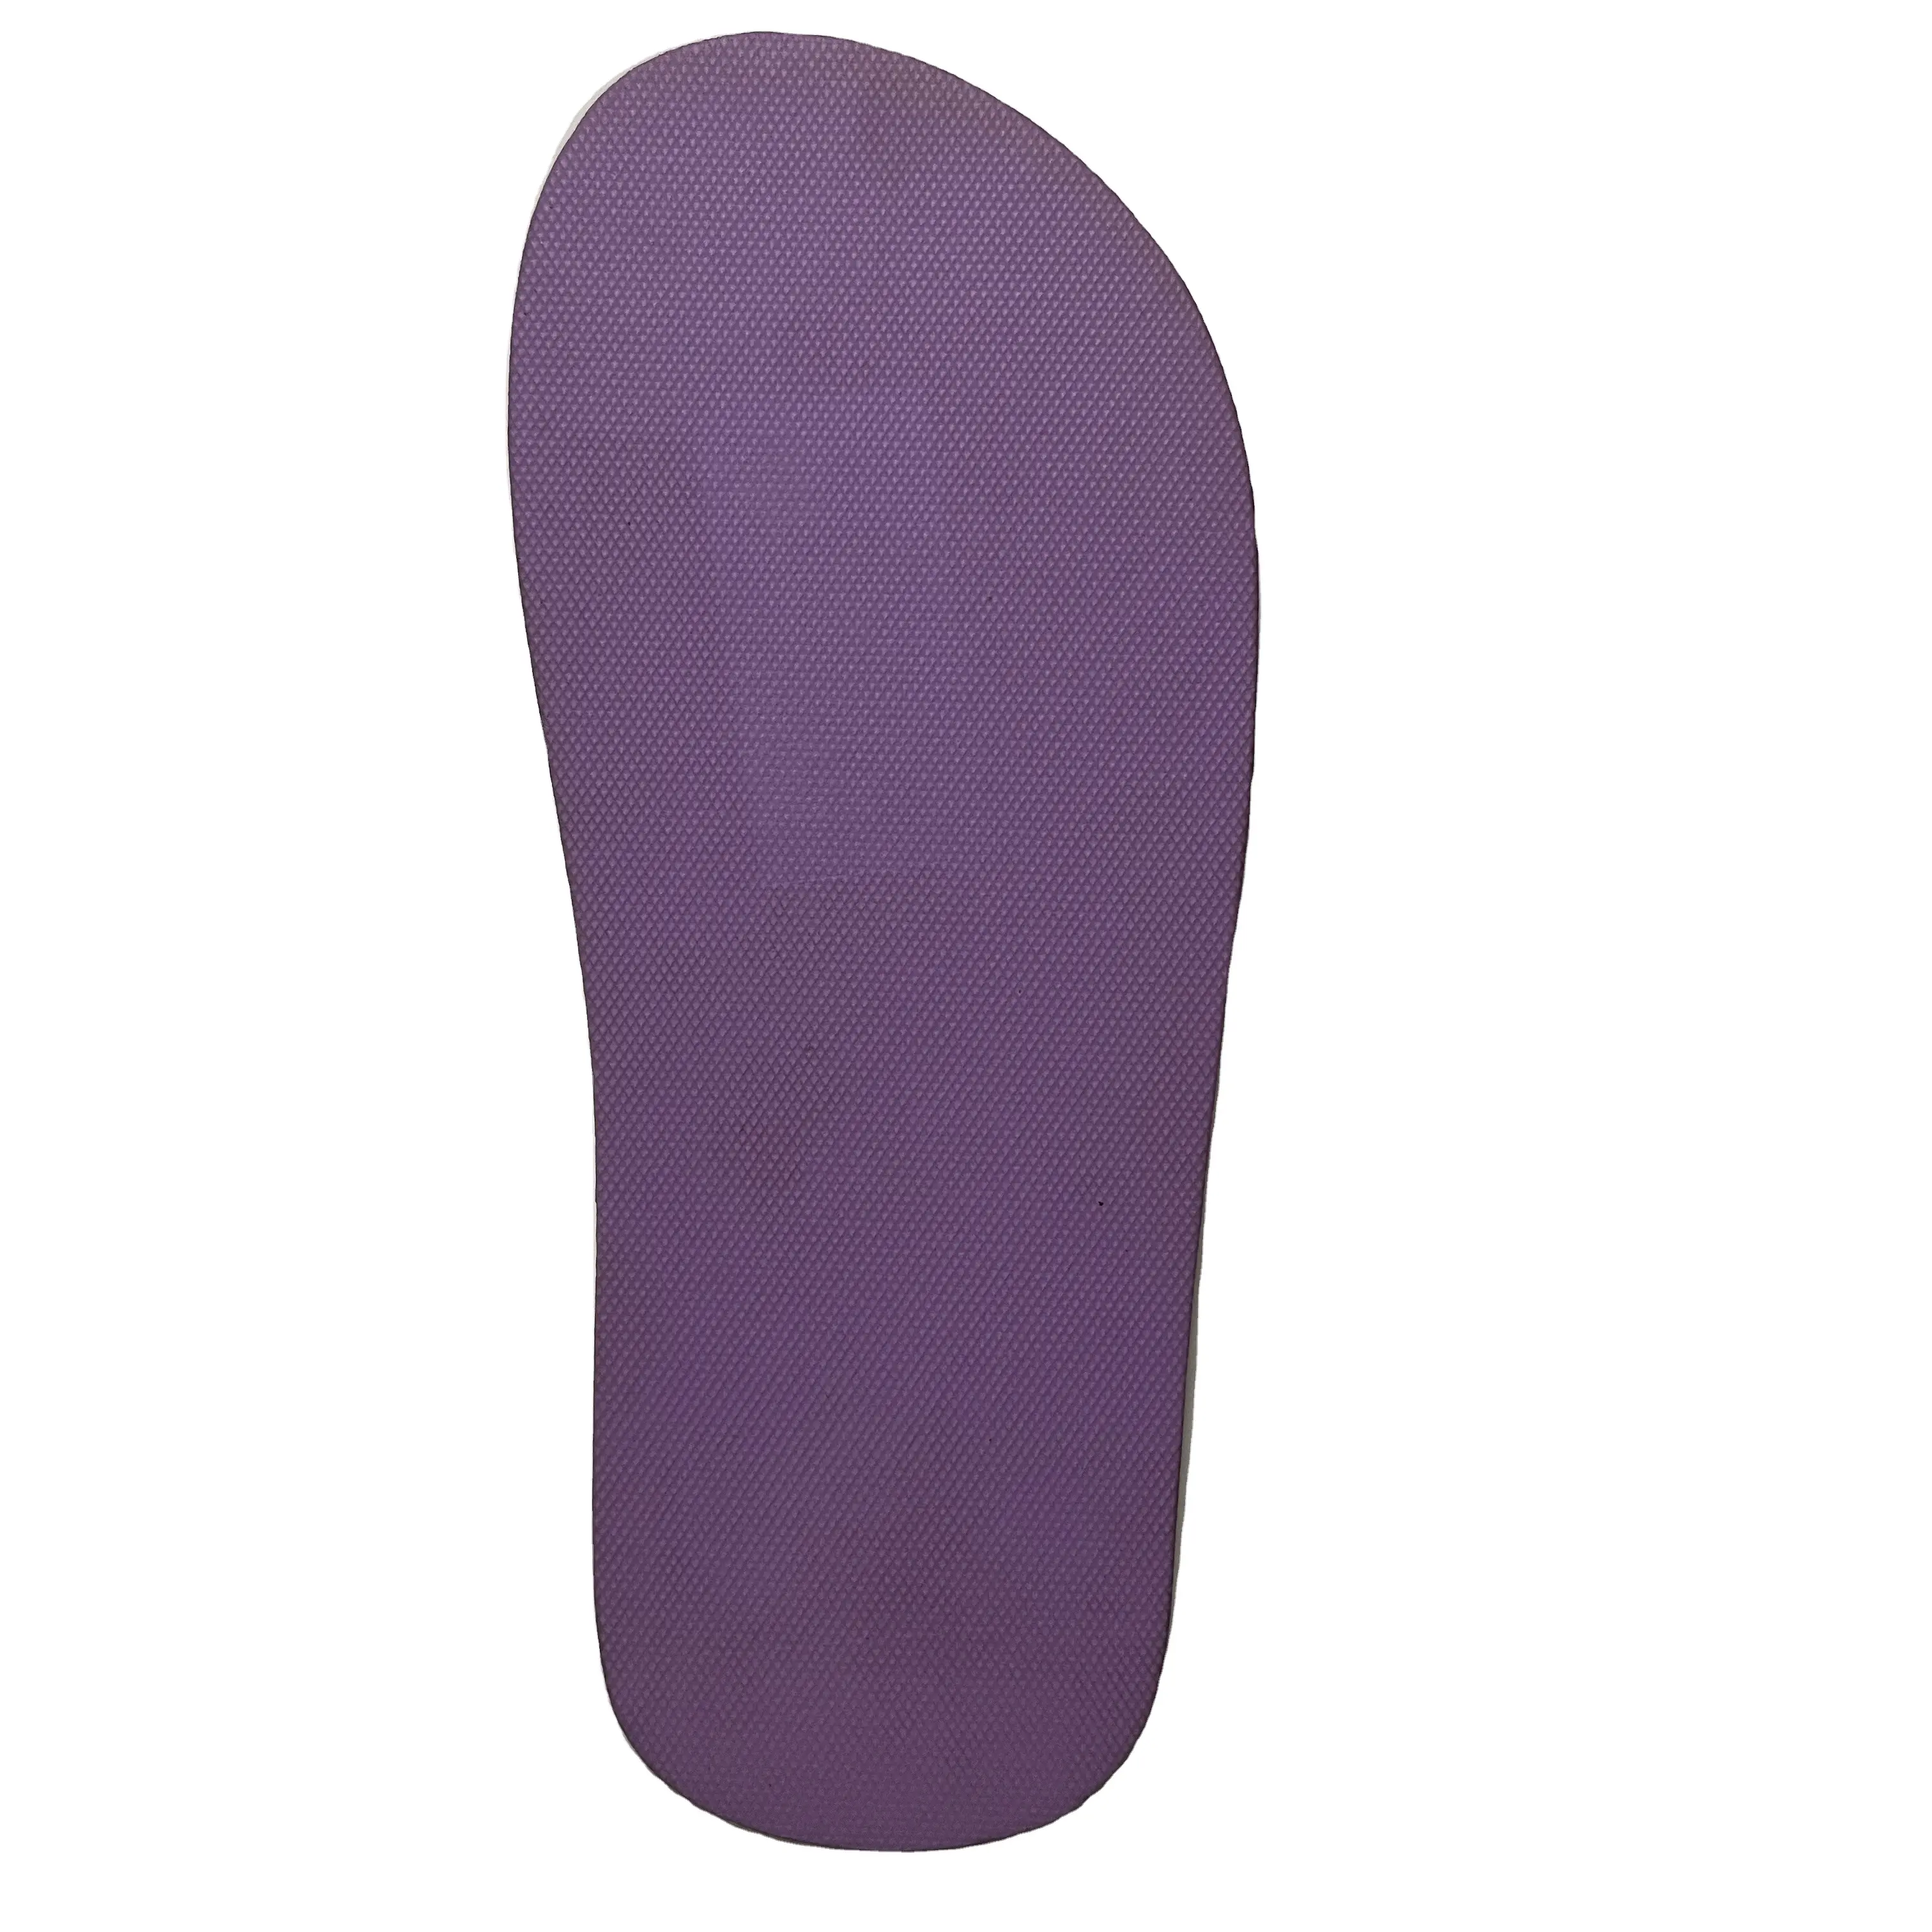 recommend multiple color options Flip Flop Soles EVA foam rubber material soles for shoe soles slippers sandals